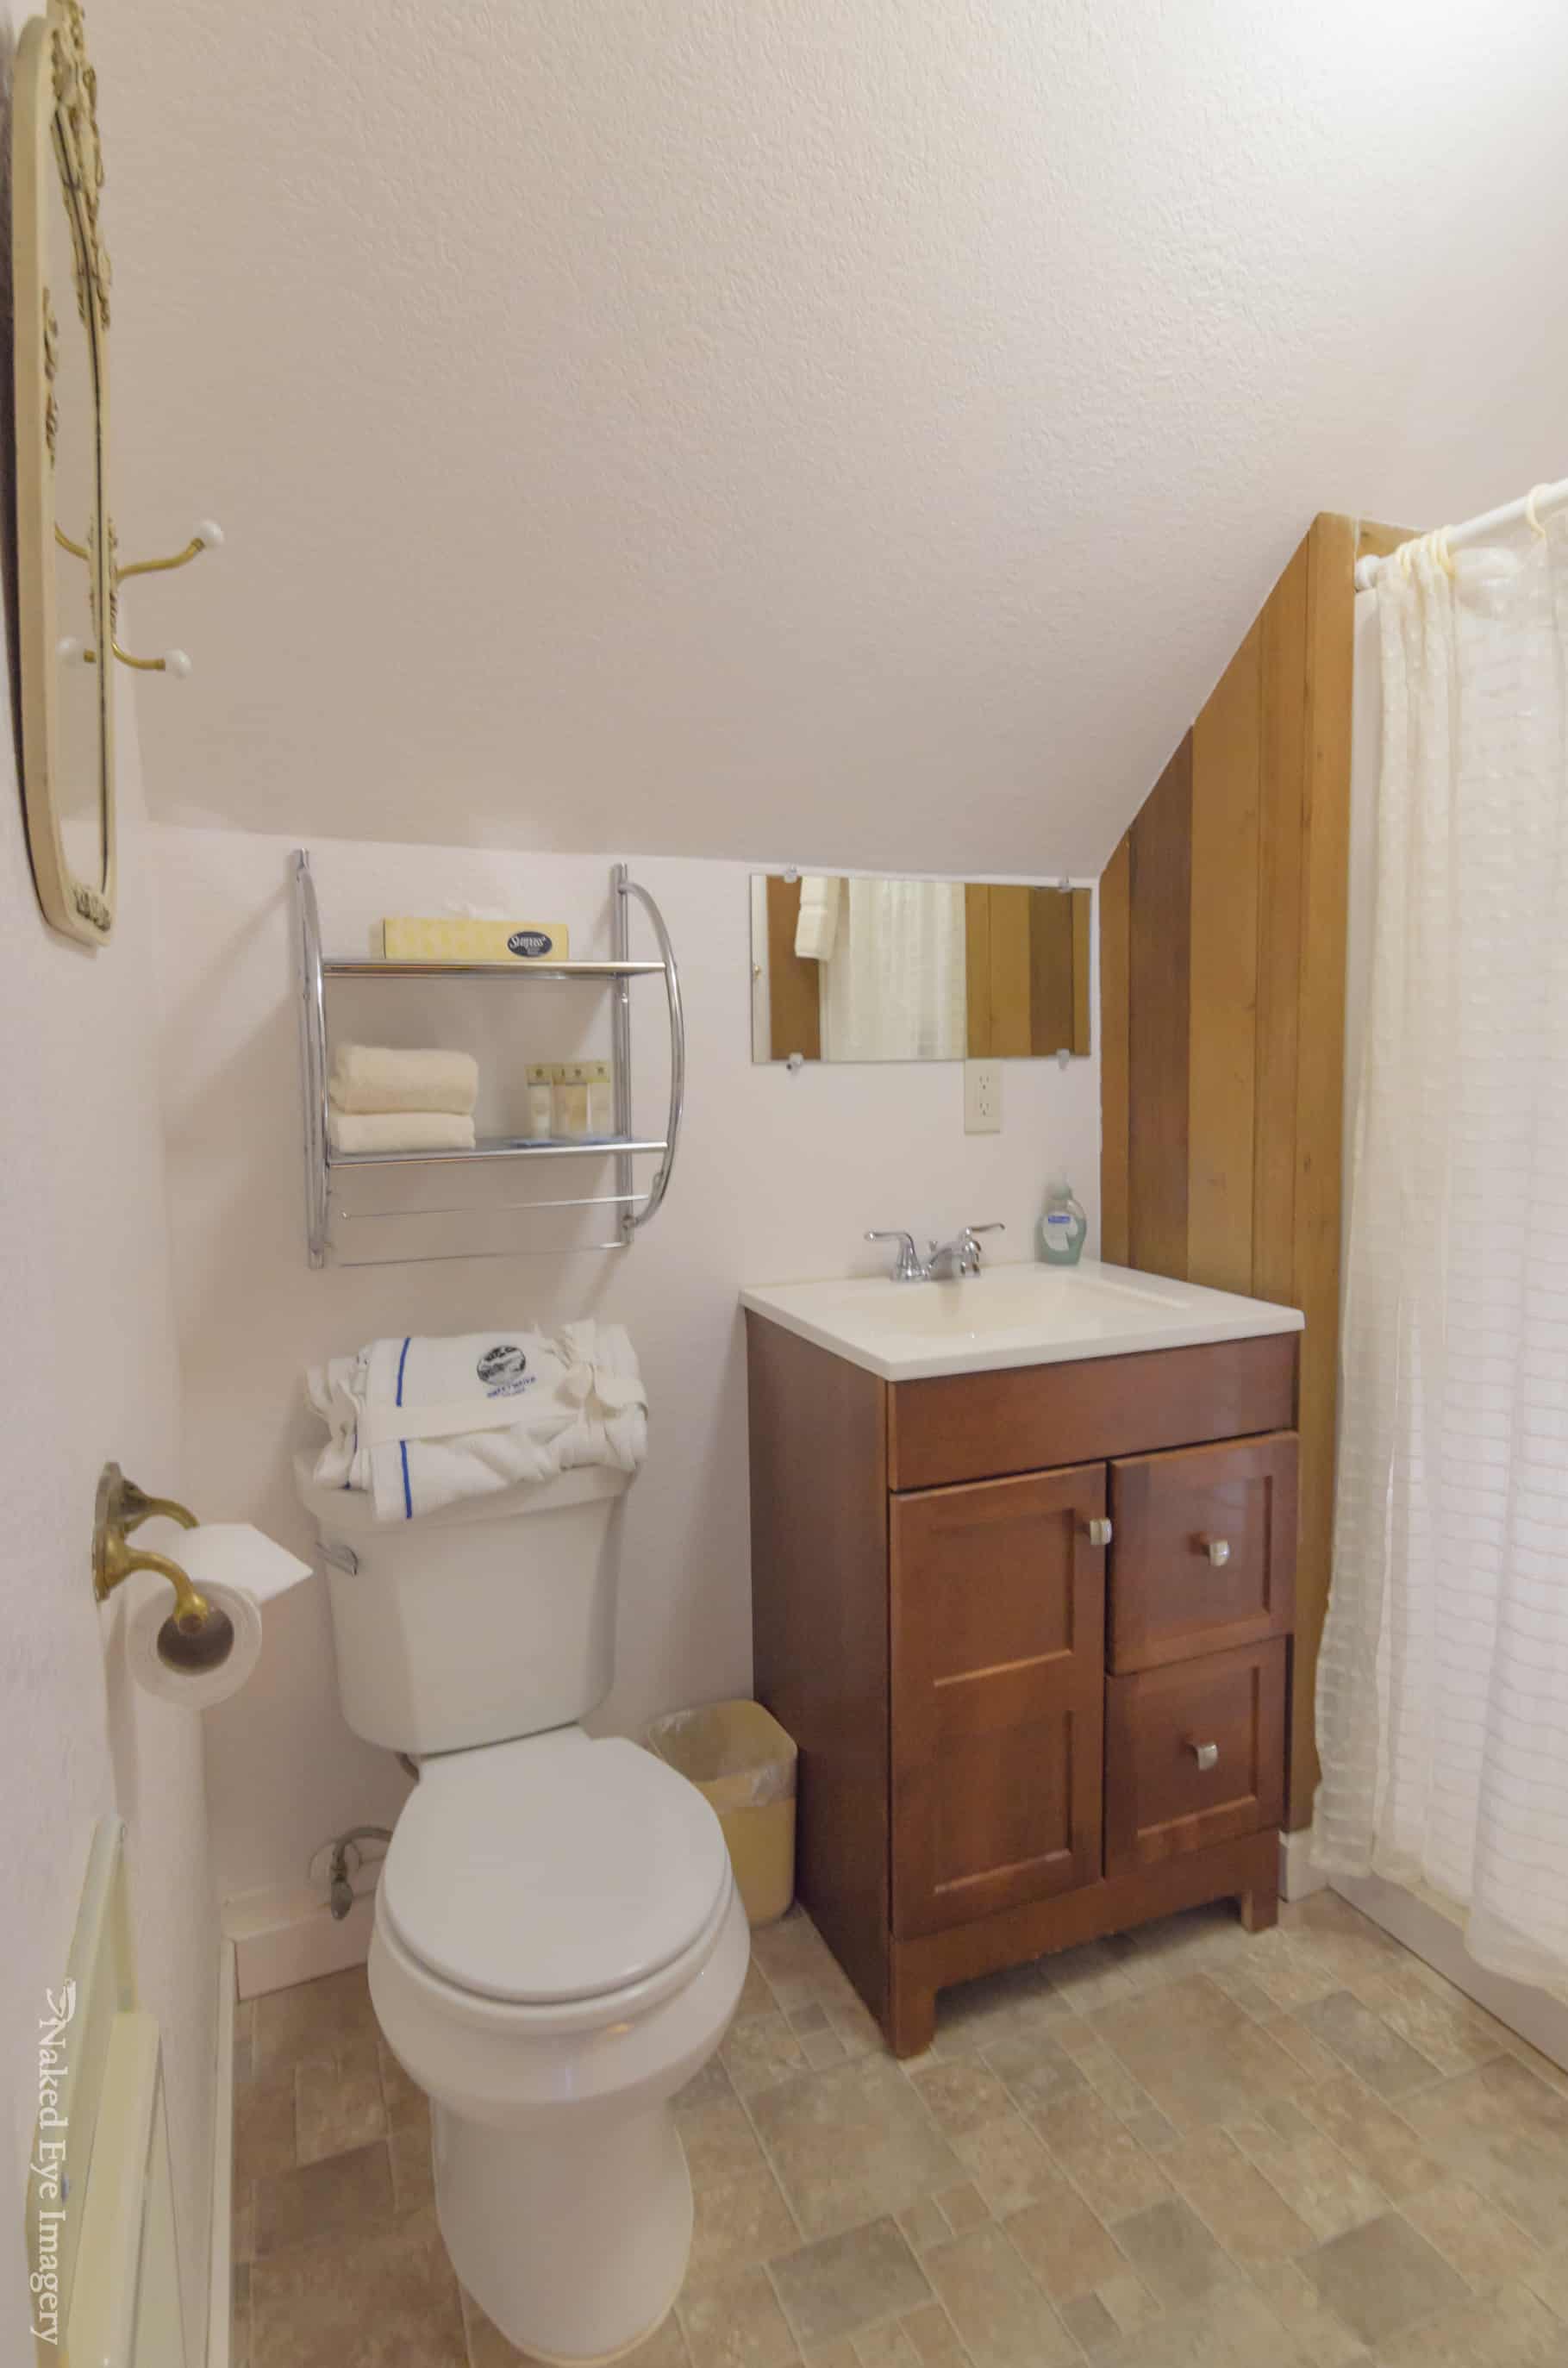 Rosie's Room - Bathroom 2015